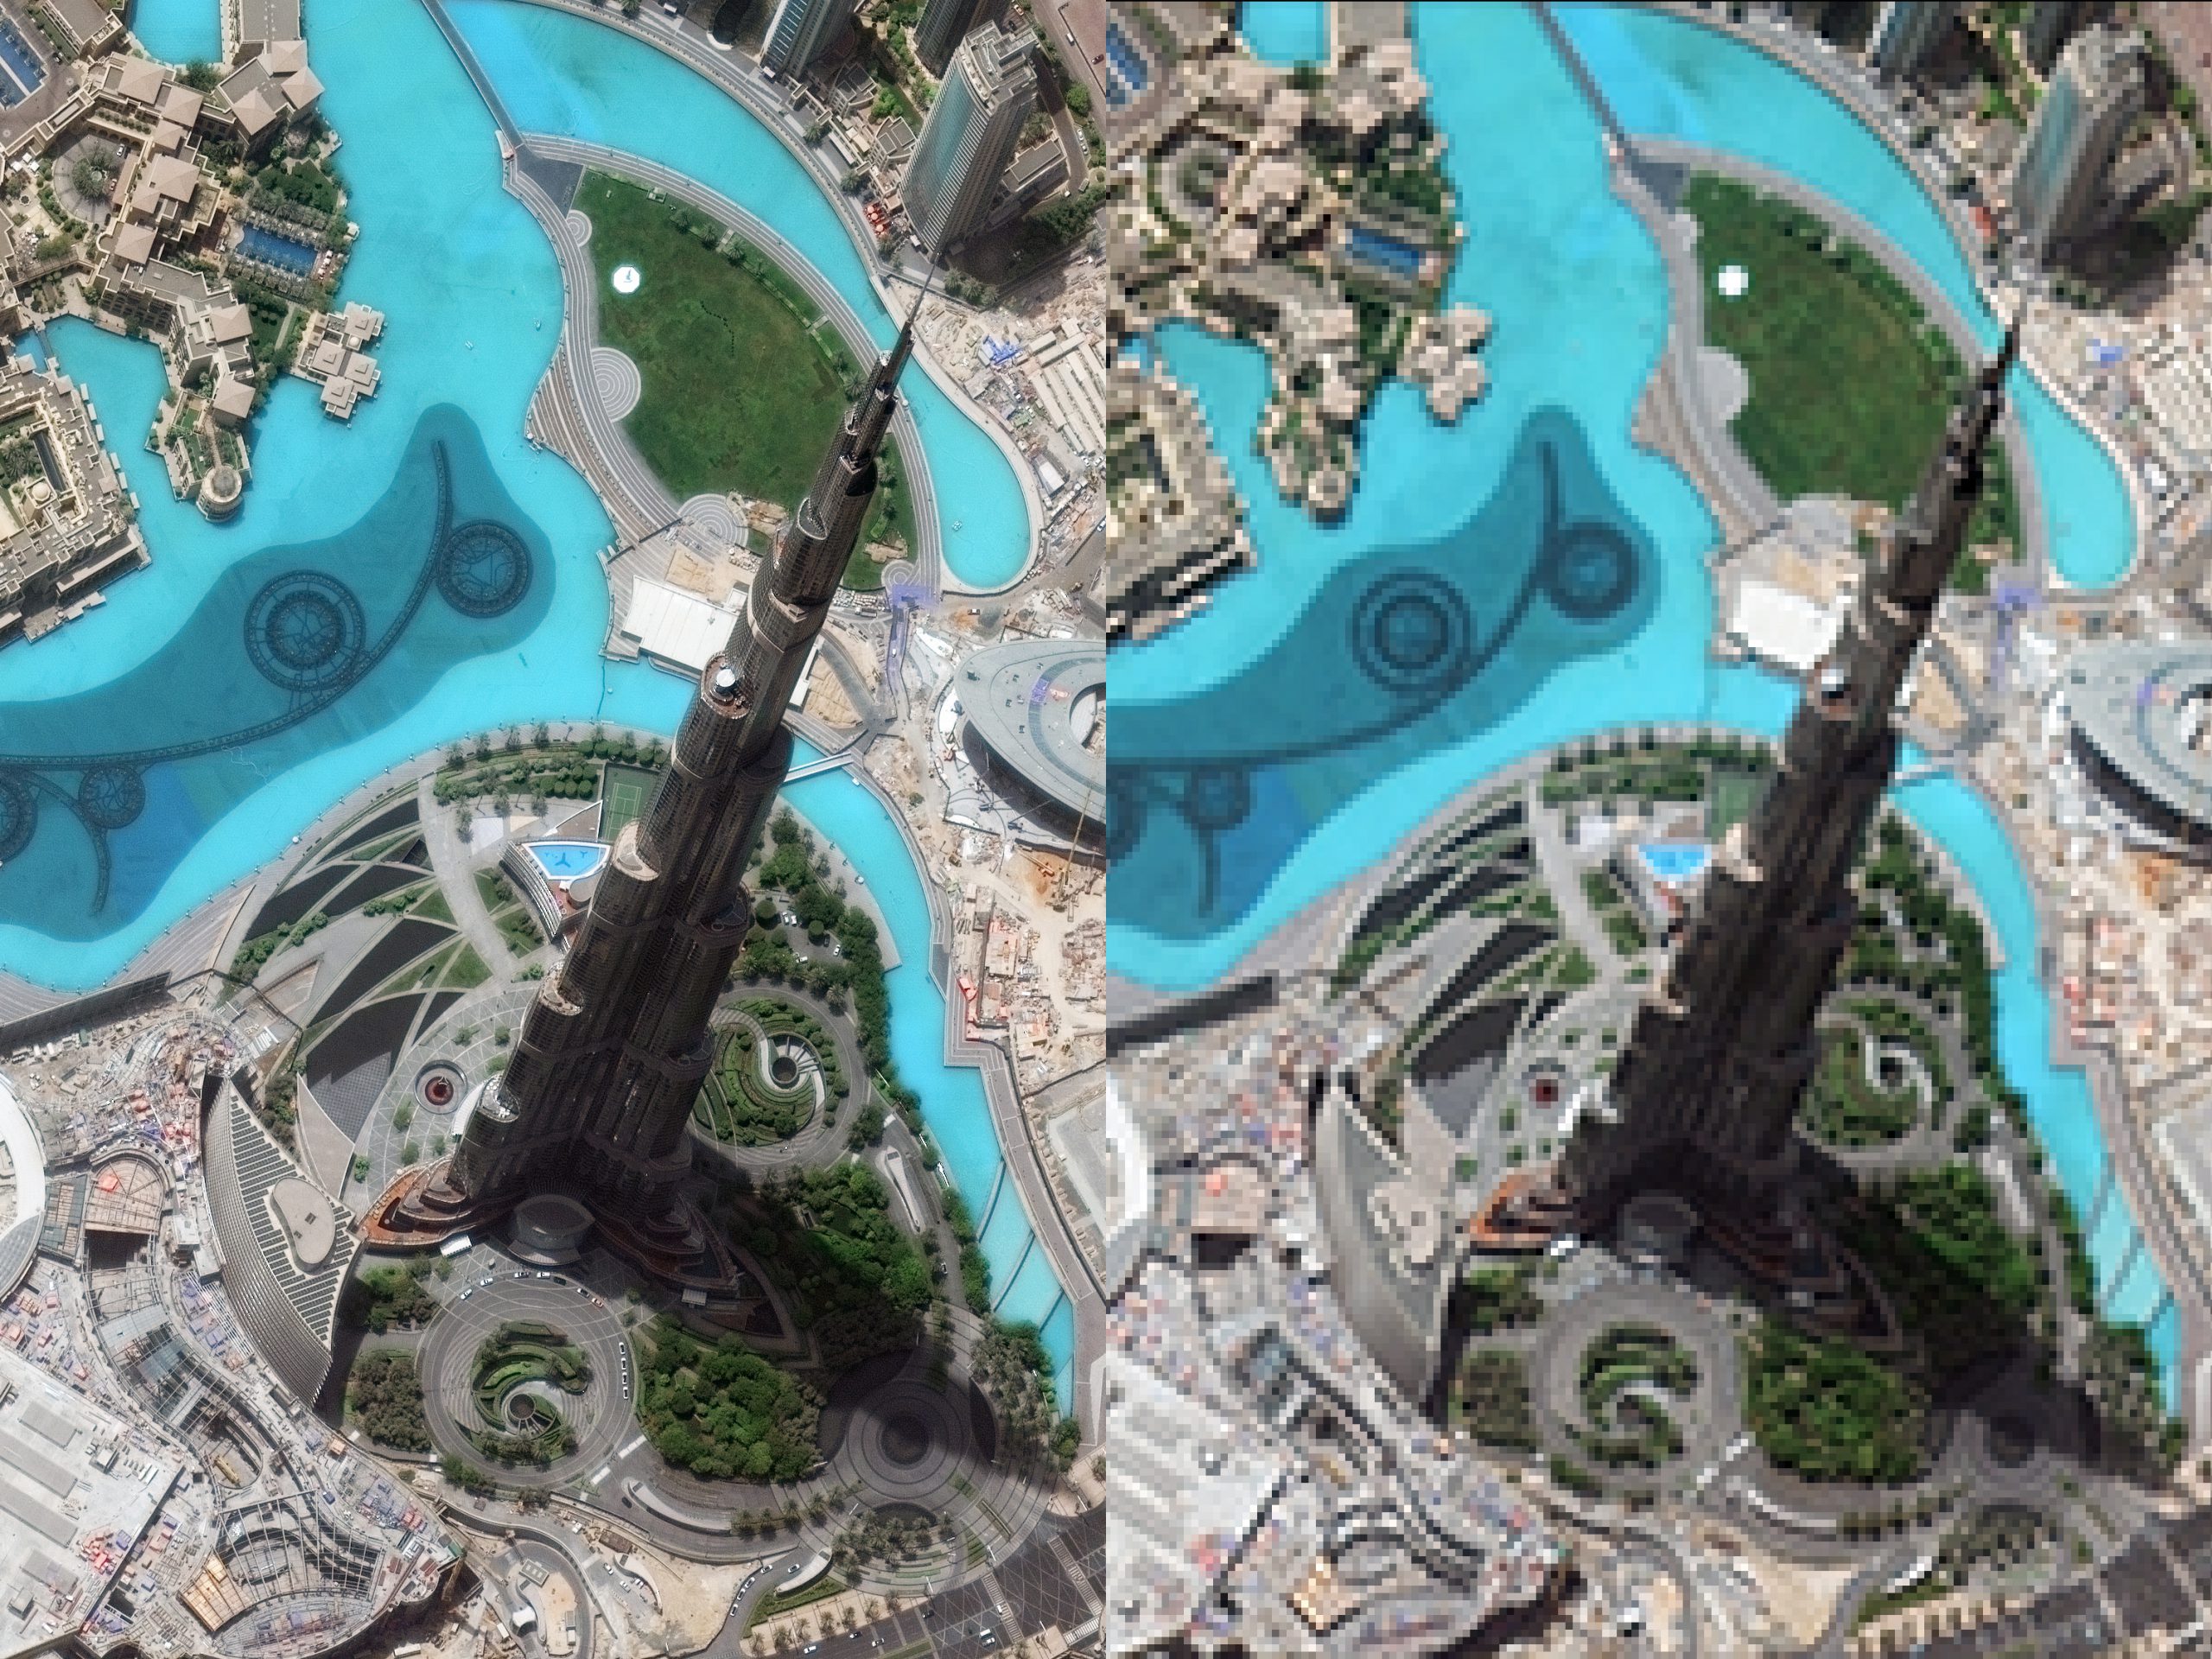 Wieżowiec Burdż Chalifa w Dubaju - po lewej w rozdzielczości około 1 m/piksel, po prawej - w 100 razy mniejszej (10 m/piksel). Fot. DigitalGlobe